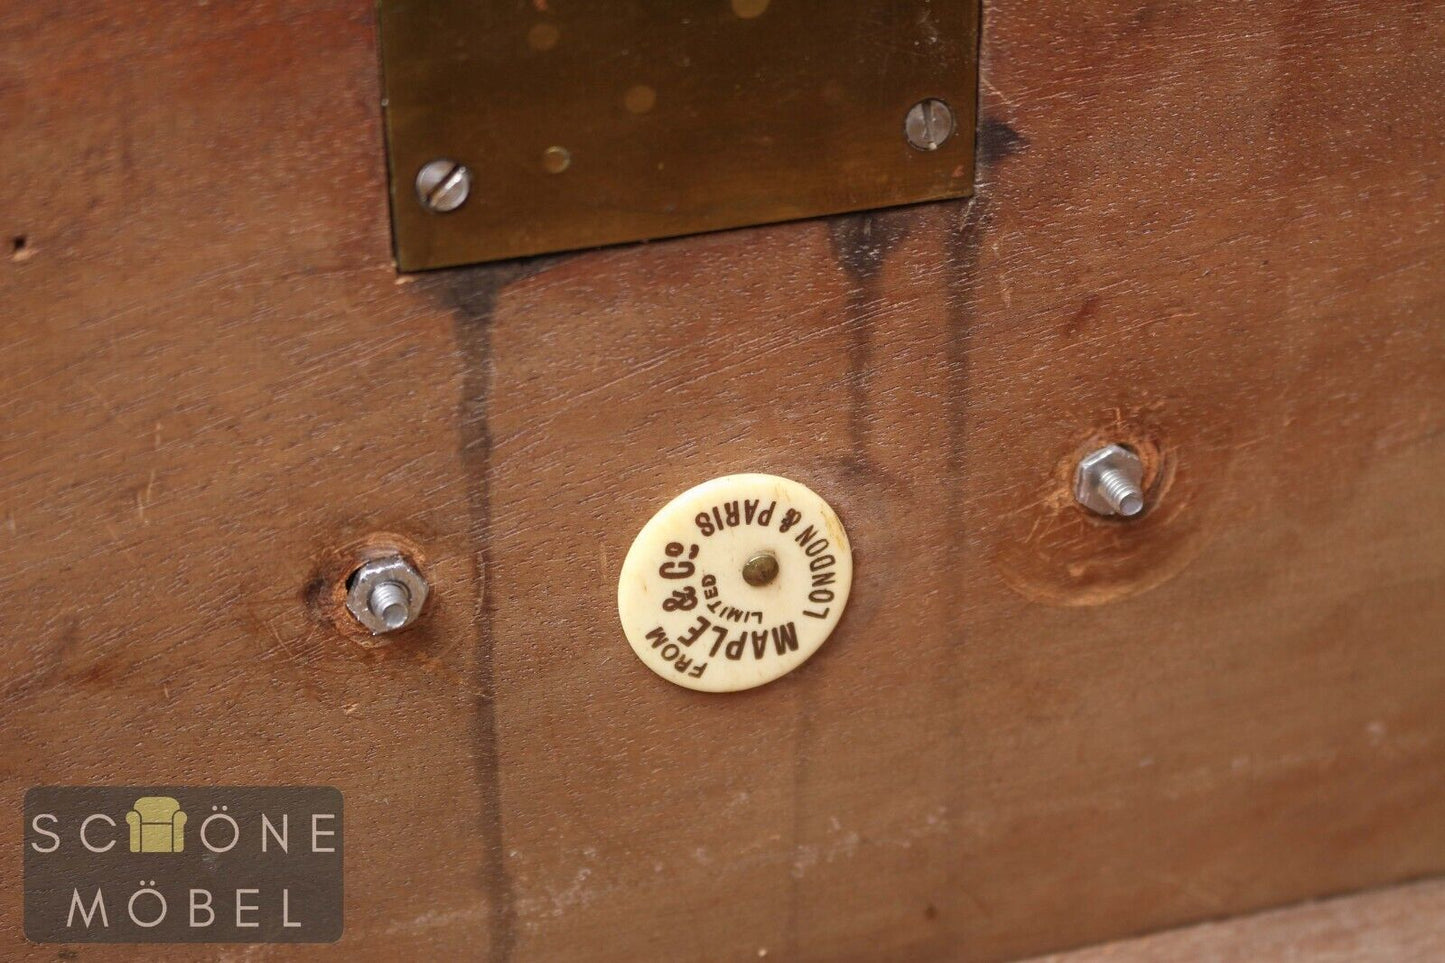 Maple & Co. Kommode Englisches Design Antik Sideboard Anrichte 1880 - 1920